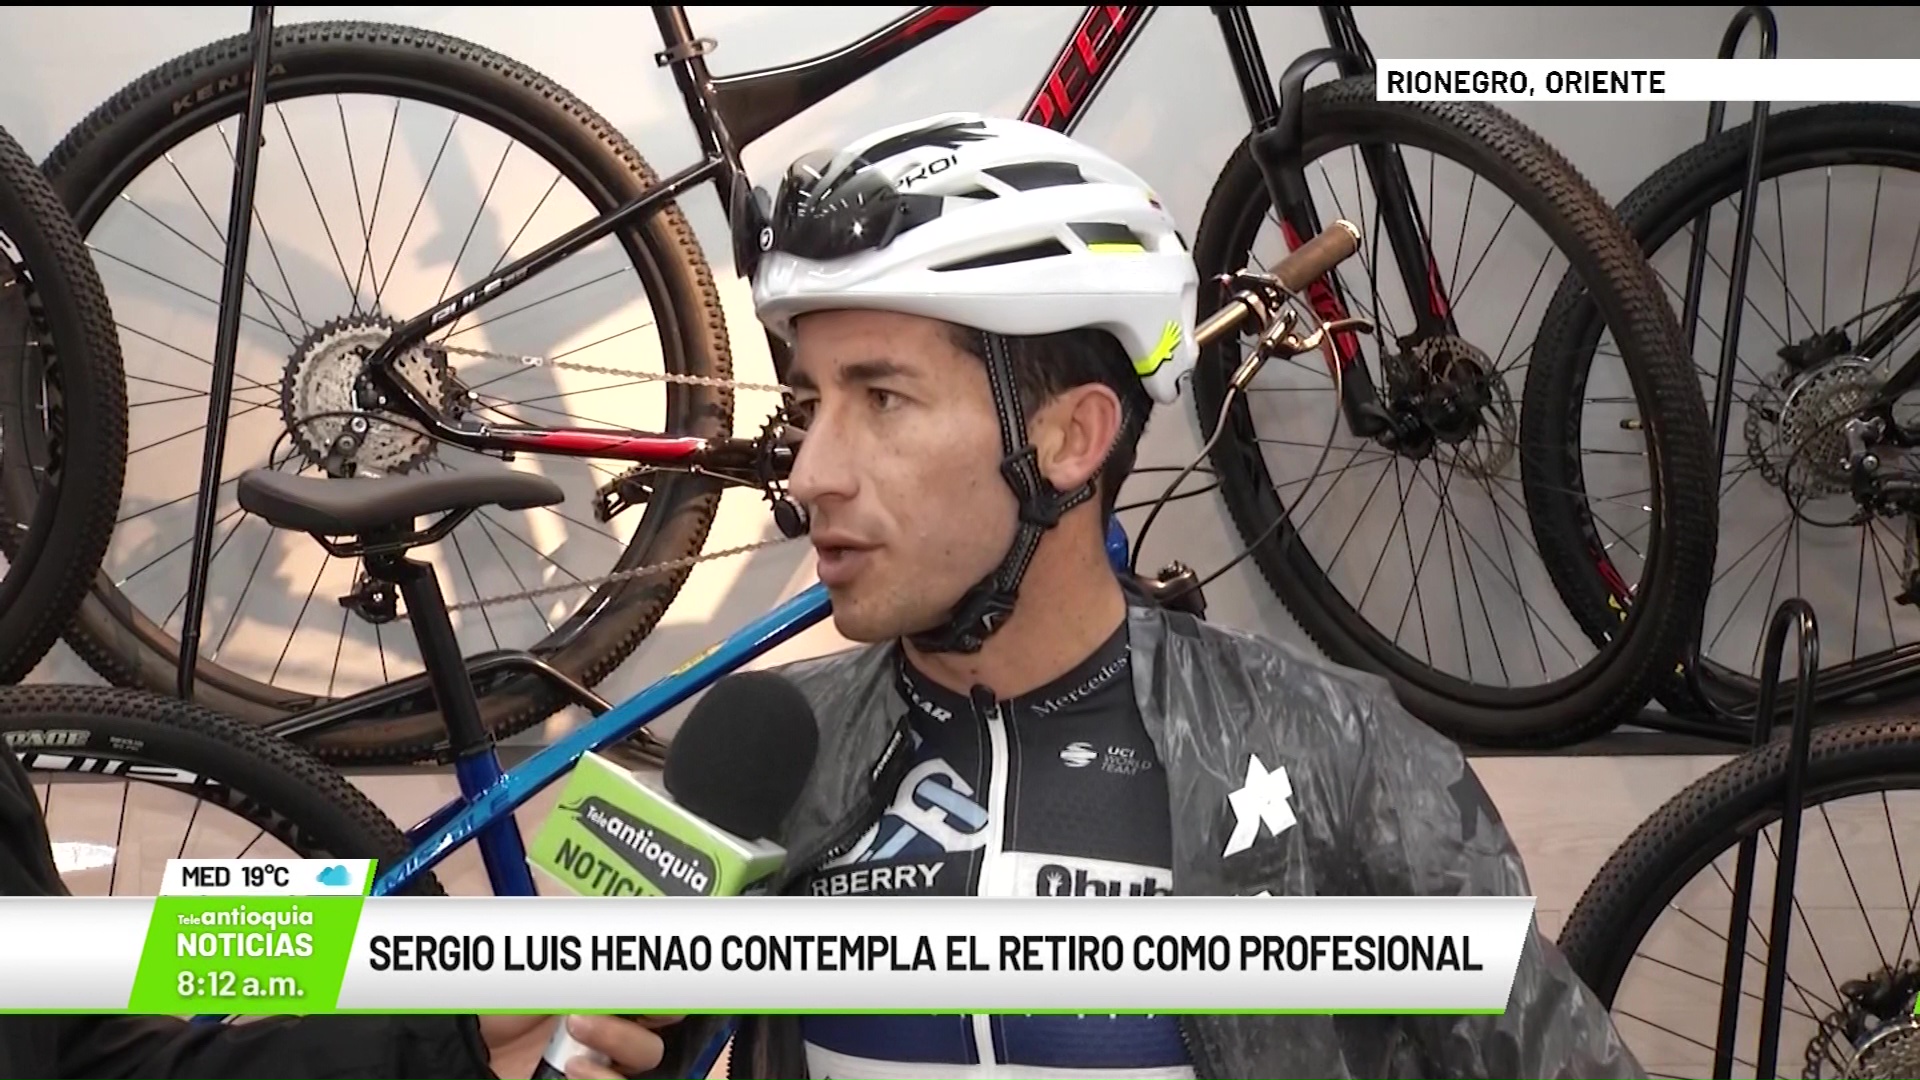 Sergio Luis Henao contempla el retiro como profesional